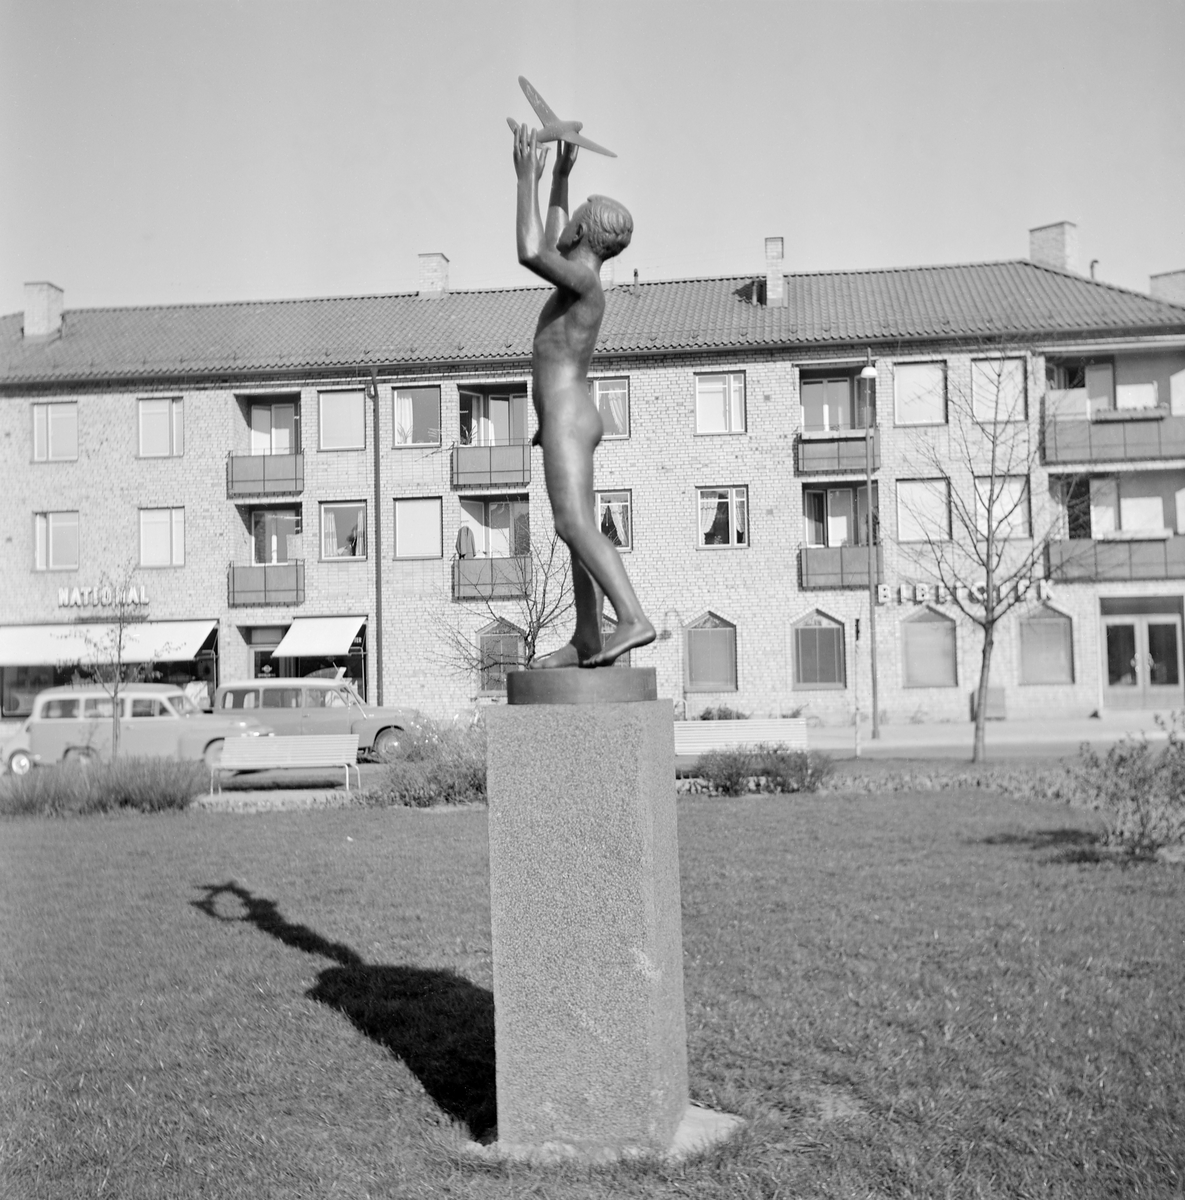 David Wretlings skulptur Nya vingar i Linköping är tillkommen 1950 som en av flera i bestämd upplaga. Den kan även beskådas i exempelvis Sala och på Nationalmuseum. Först 1958 fick skulpturen sin placering på Drottningtorget.